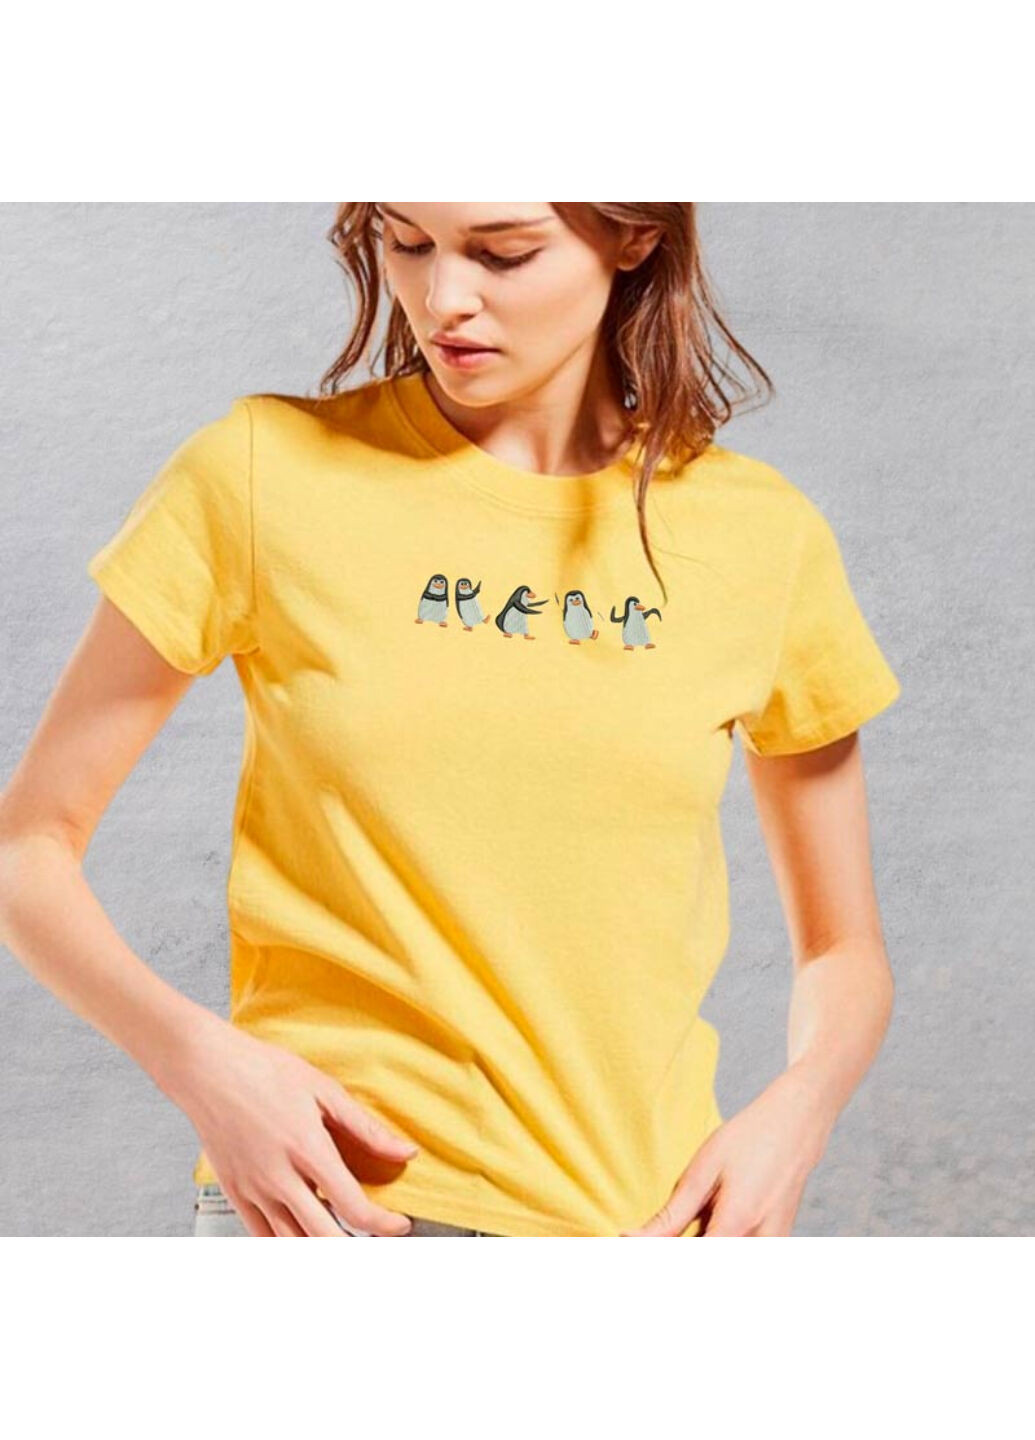 Желтая футболка с вышивкой пингвинов 02-4 женская желтый xl No Brand